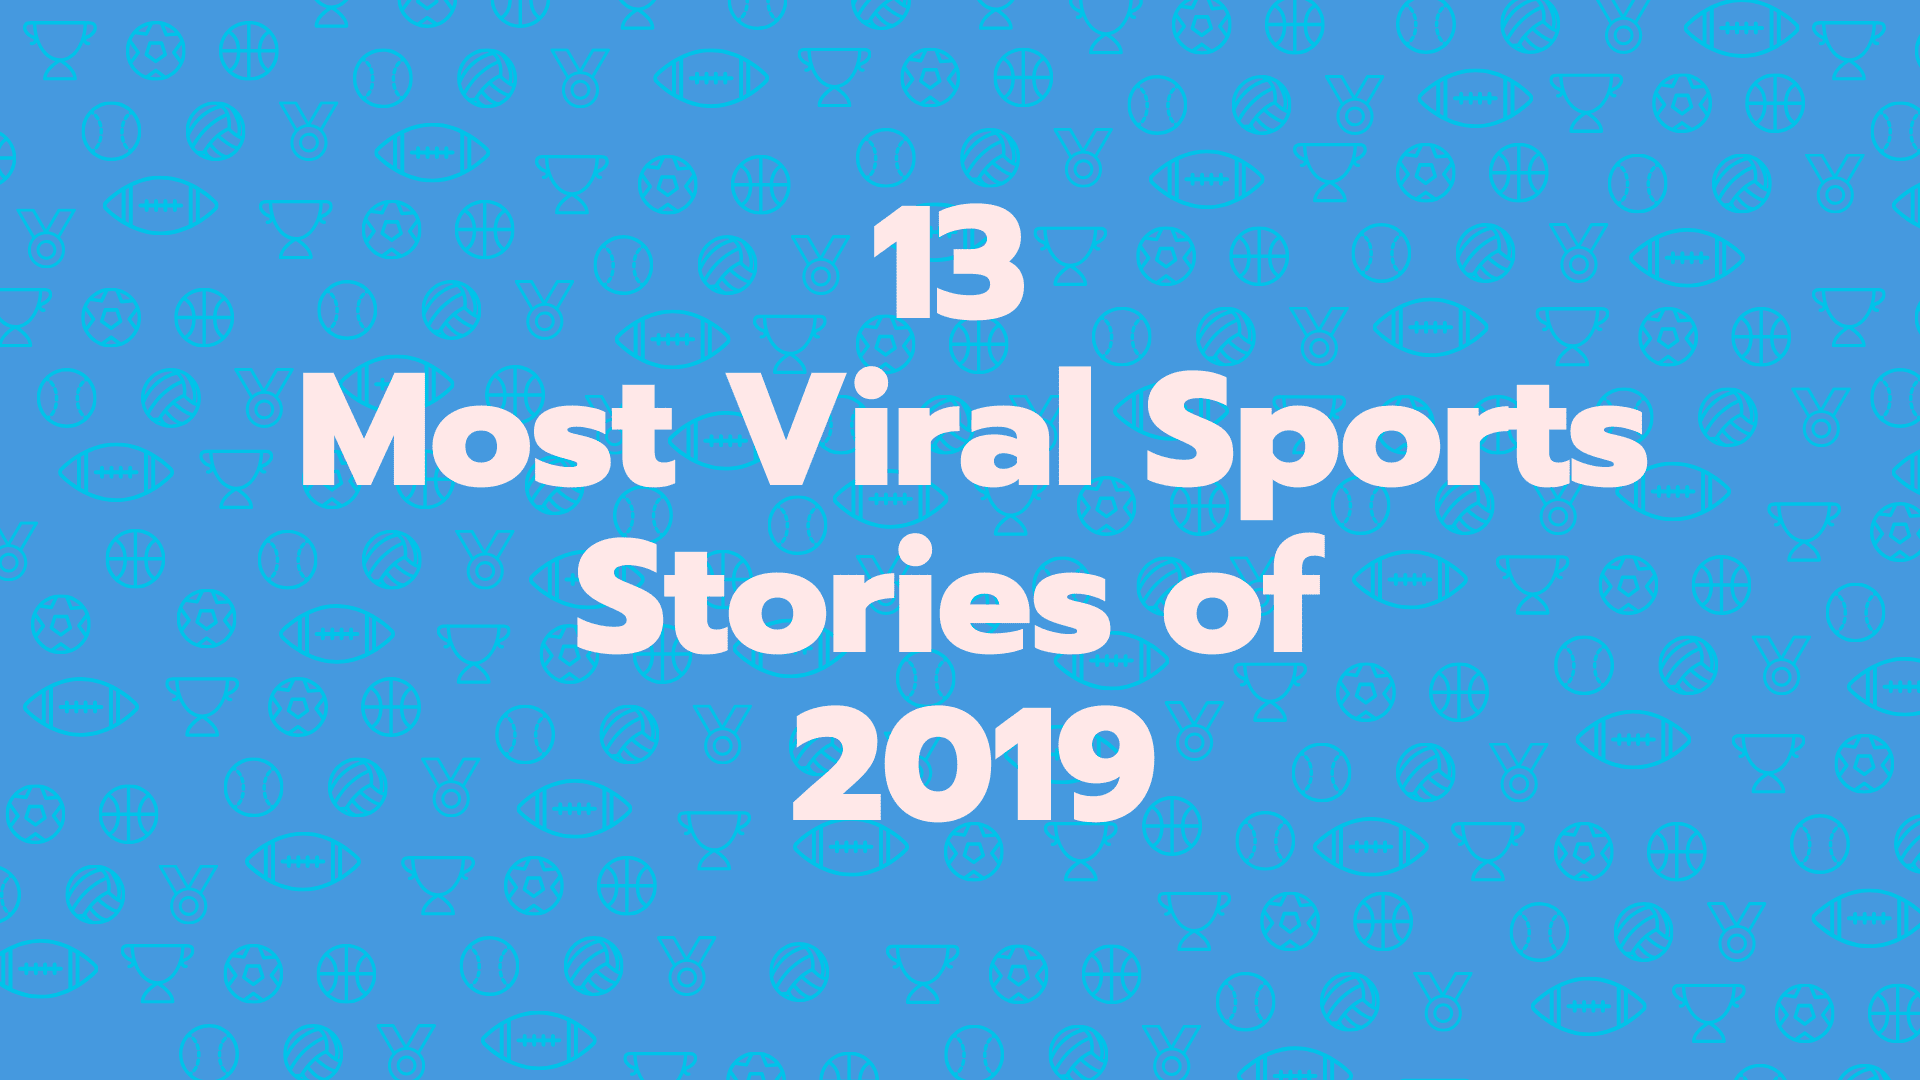 Los 13 momentos deportivos más virales de 2019